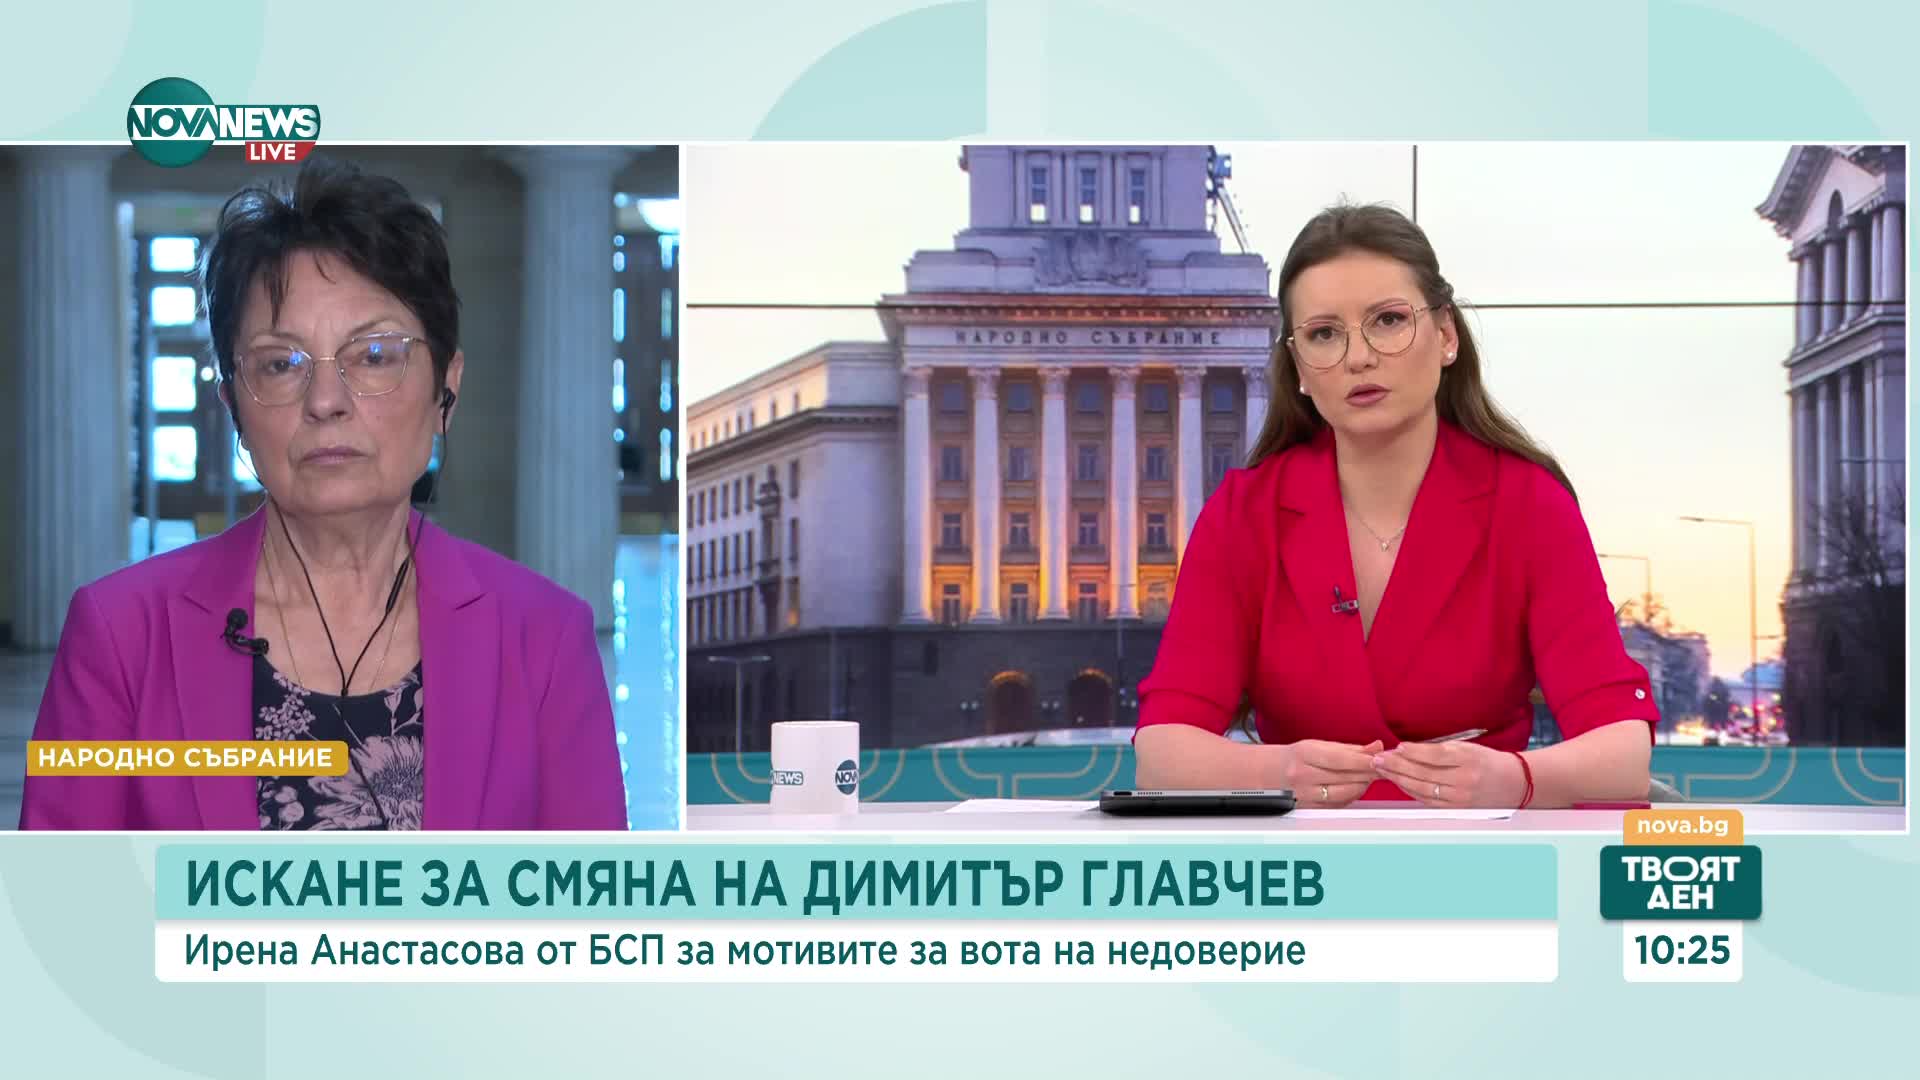 Ирена Анастасова: Имаме достатъчно мотиви, за да поискаме вот на недоверие